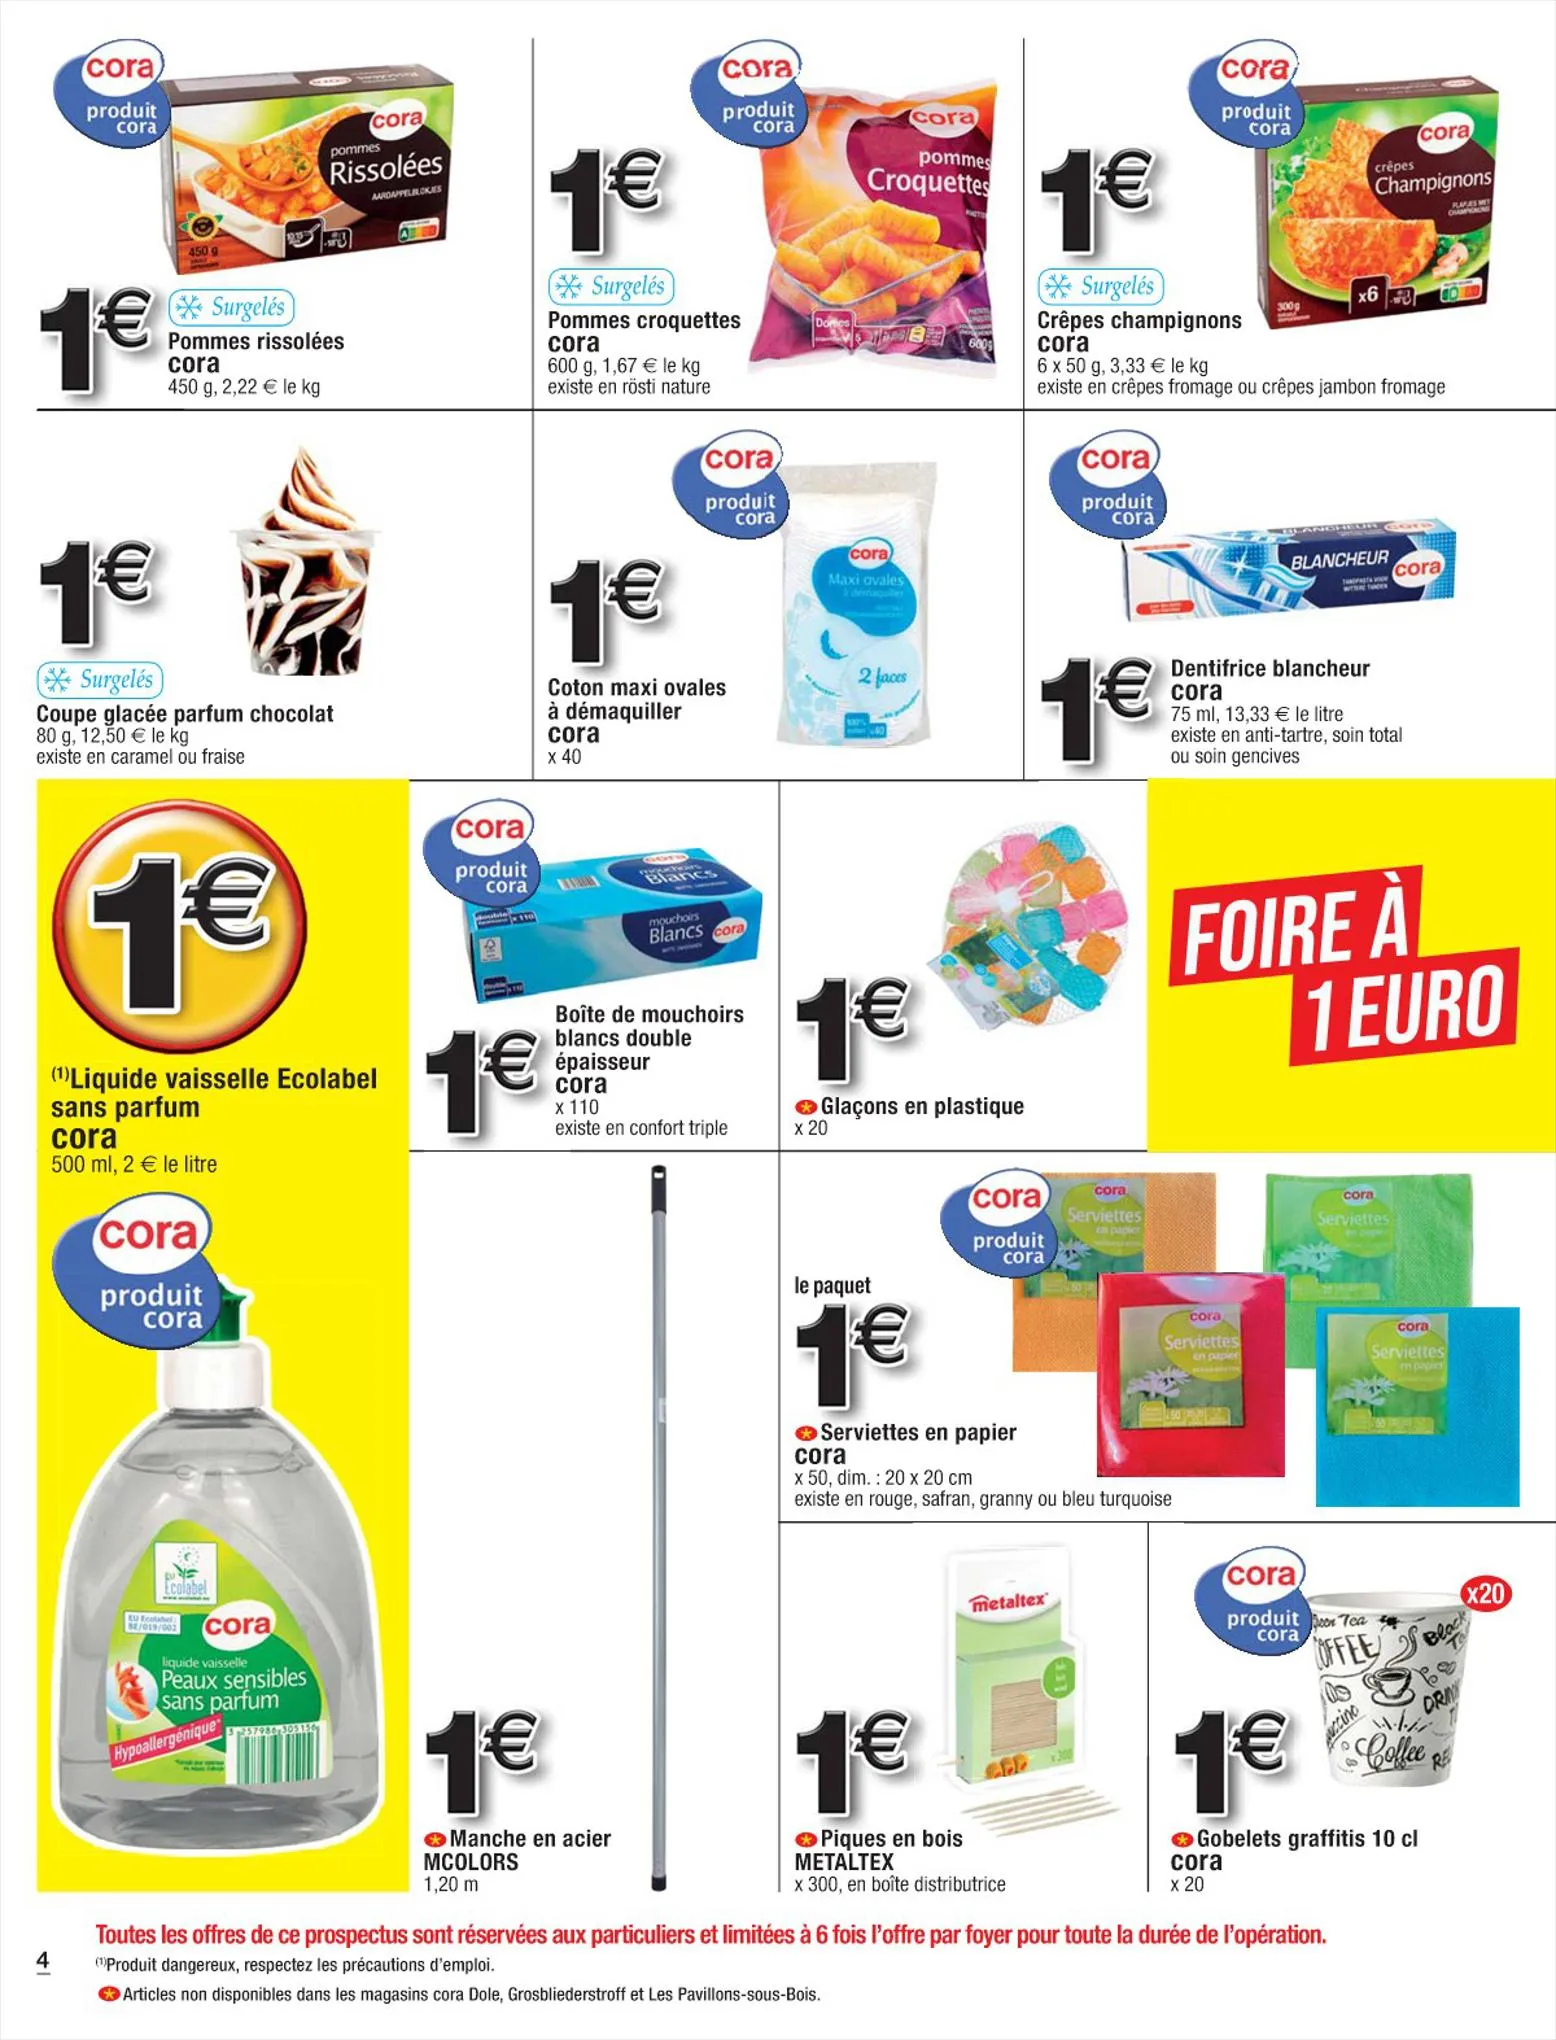 Catalogue Foire à 1 euro / 2 euros, une pluie d'offres !, page 00004